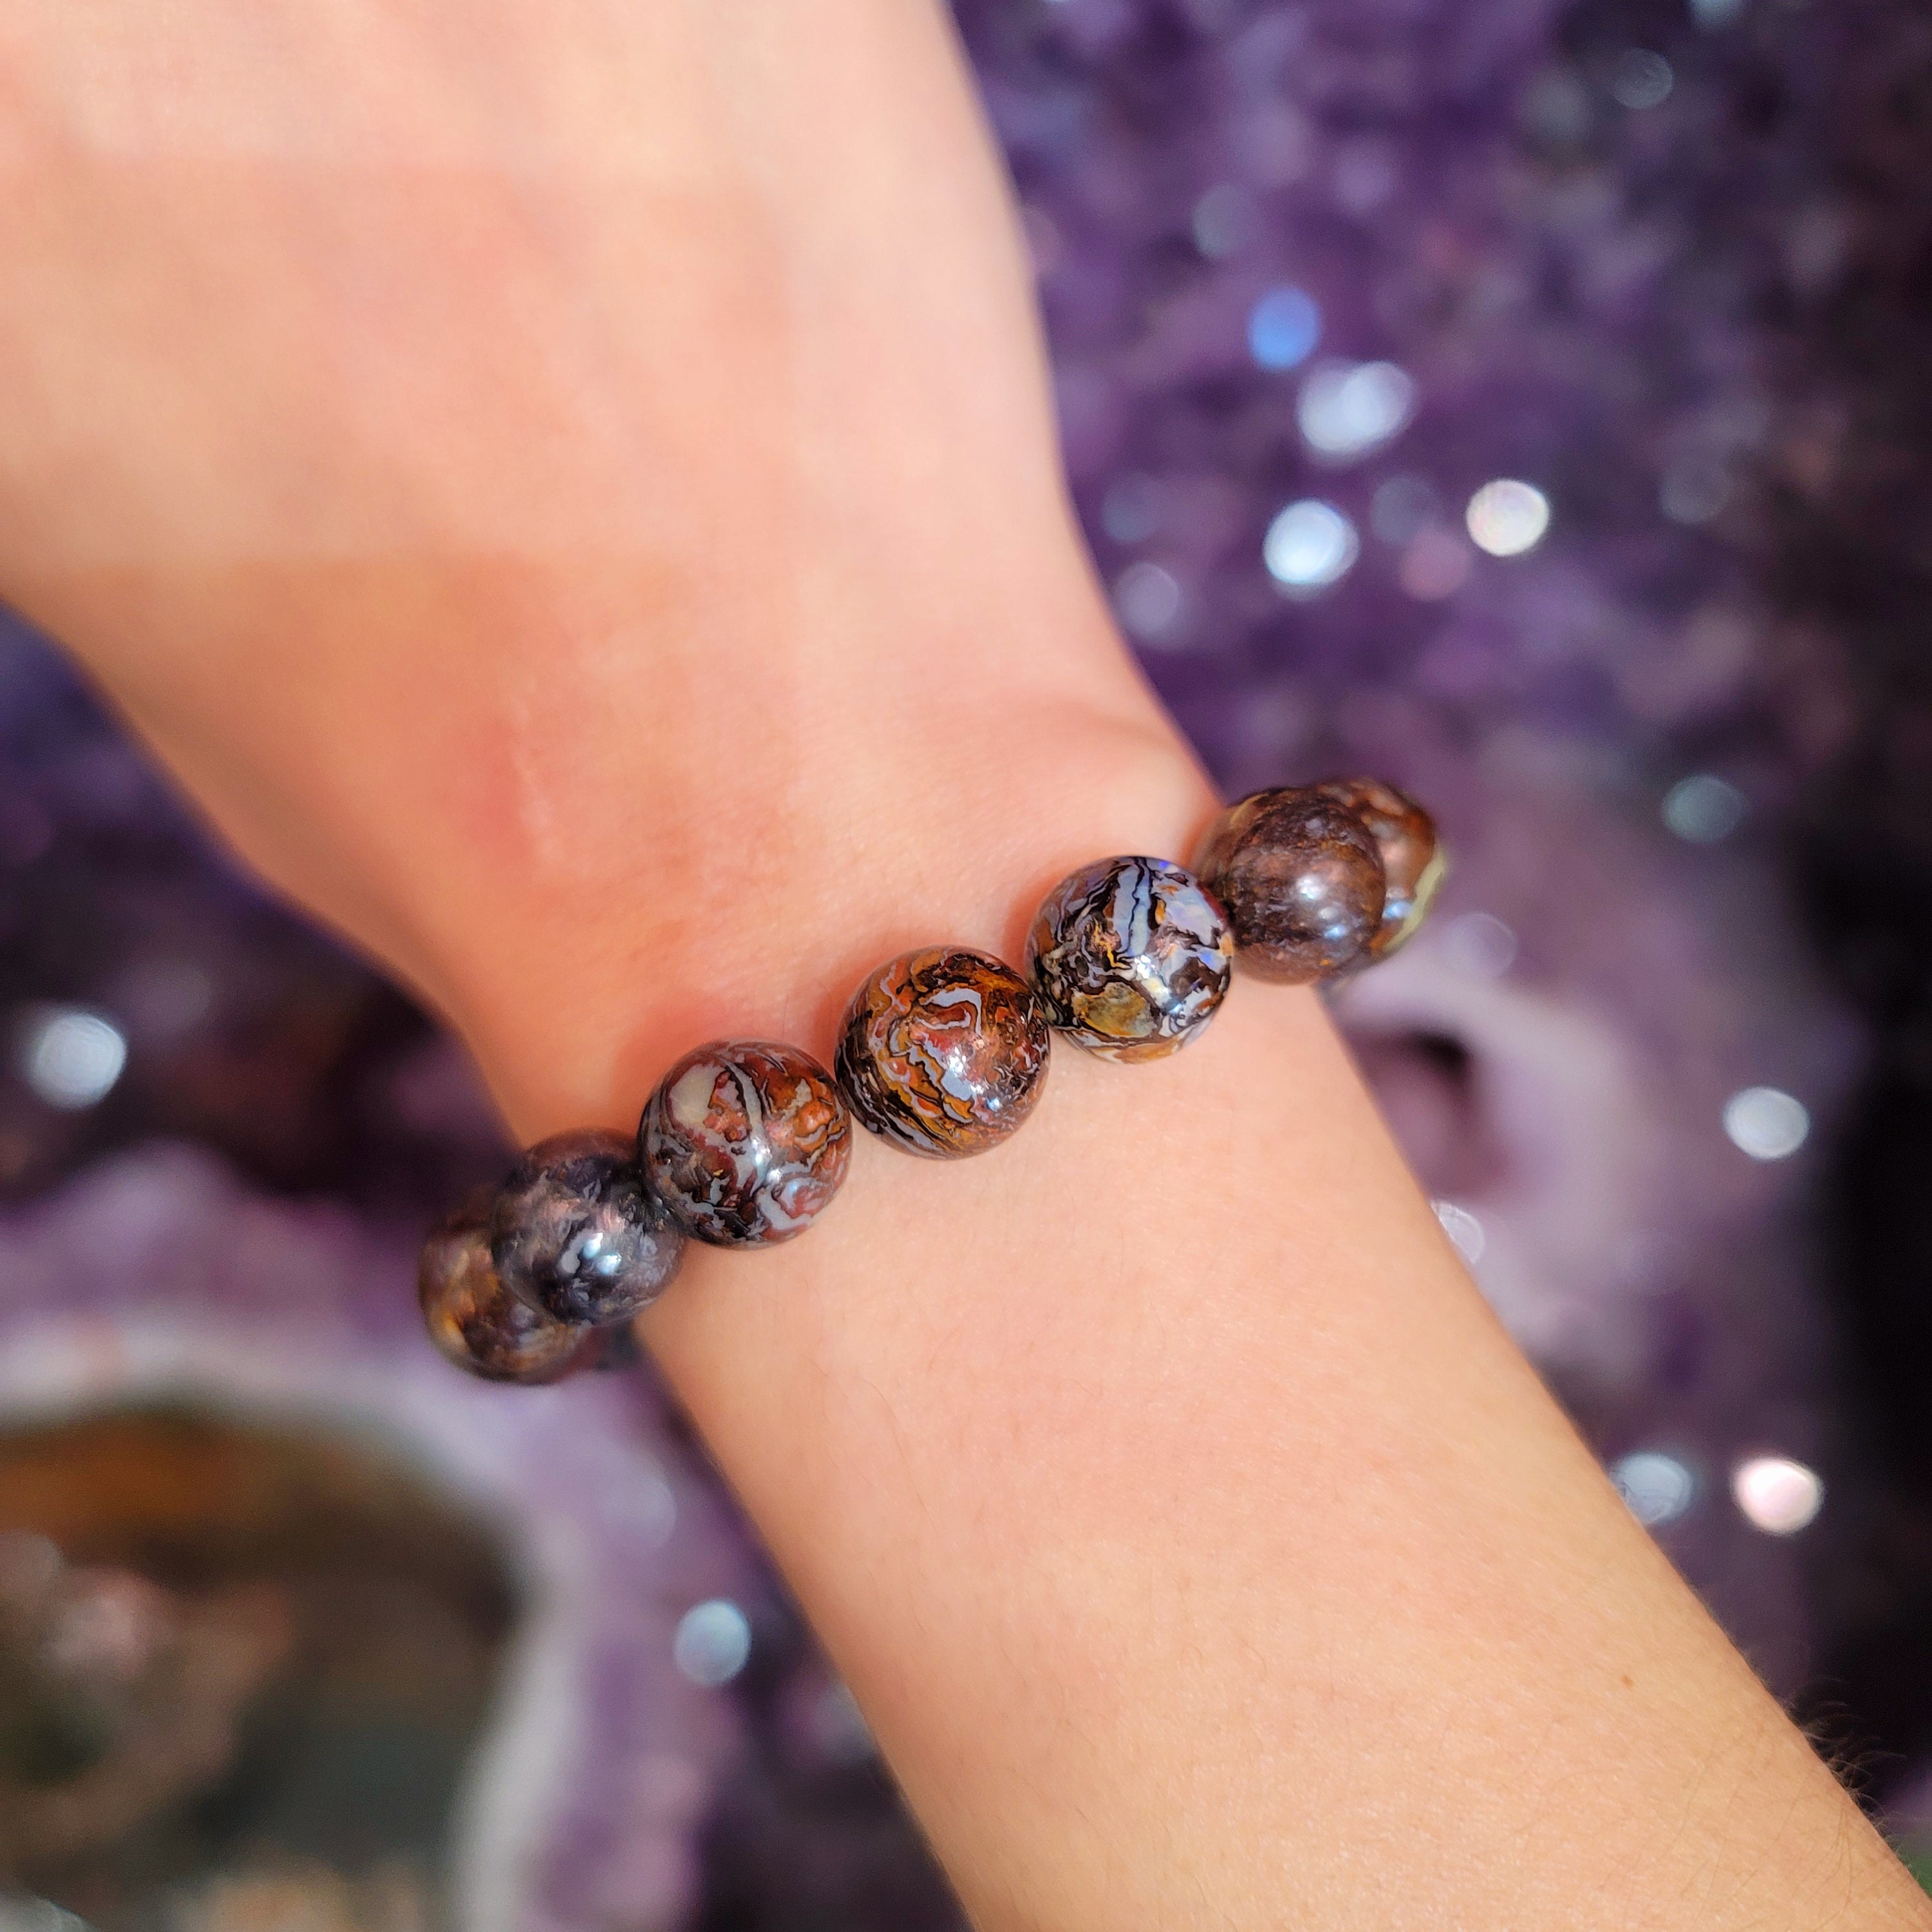 Boulder Opal Bracelet for Emotional Support, Joy and Self Worth